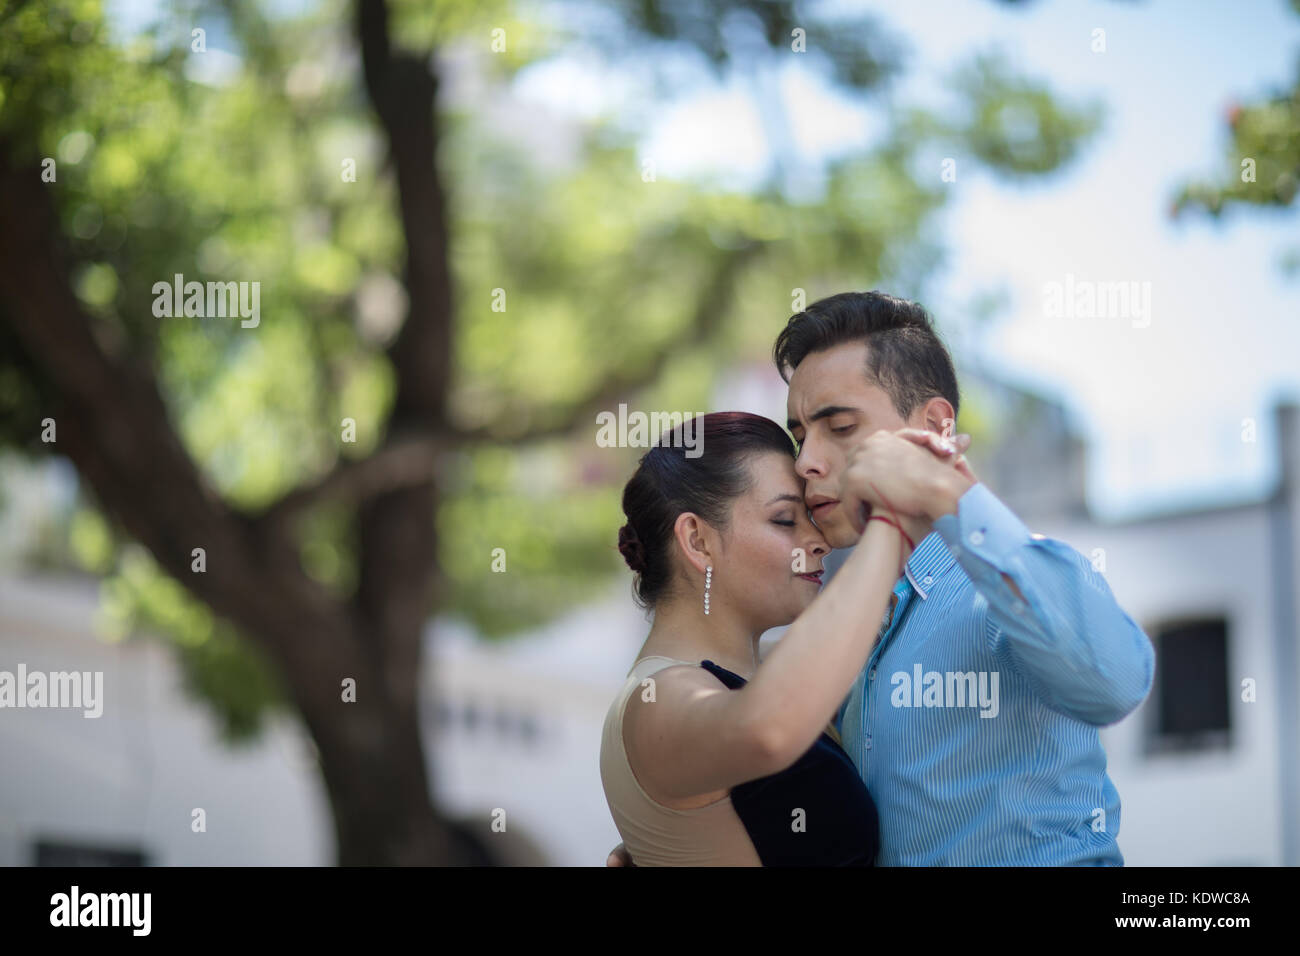 Danseurs de tango sur la Plaza Dorrego, St Elme, Buenos Aires Banque D'Images